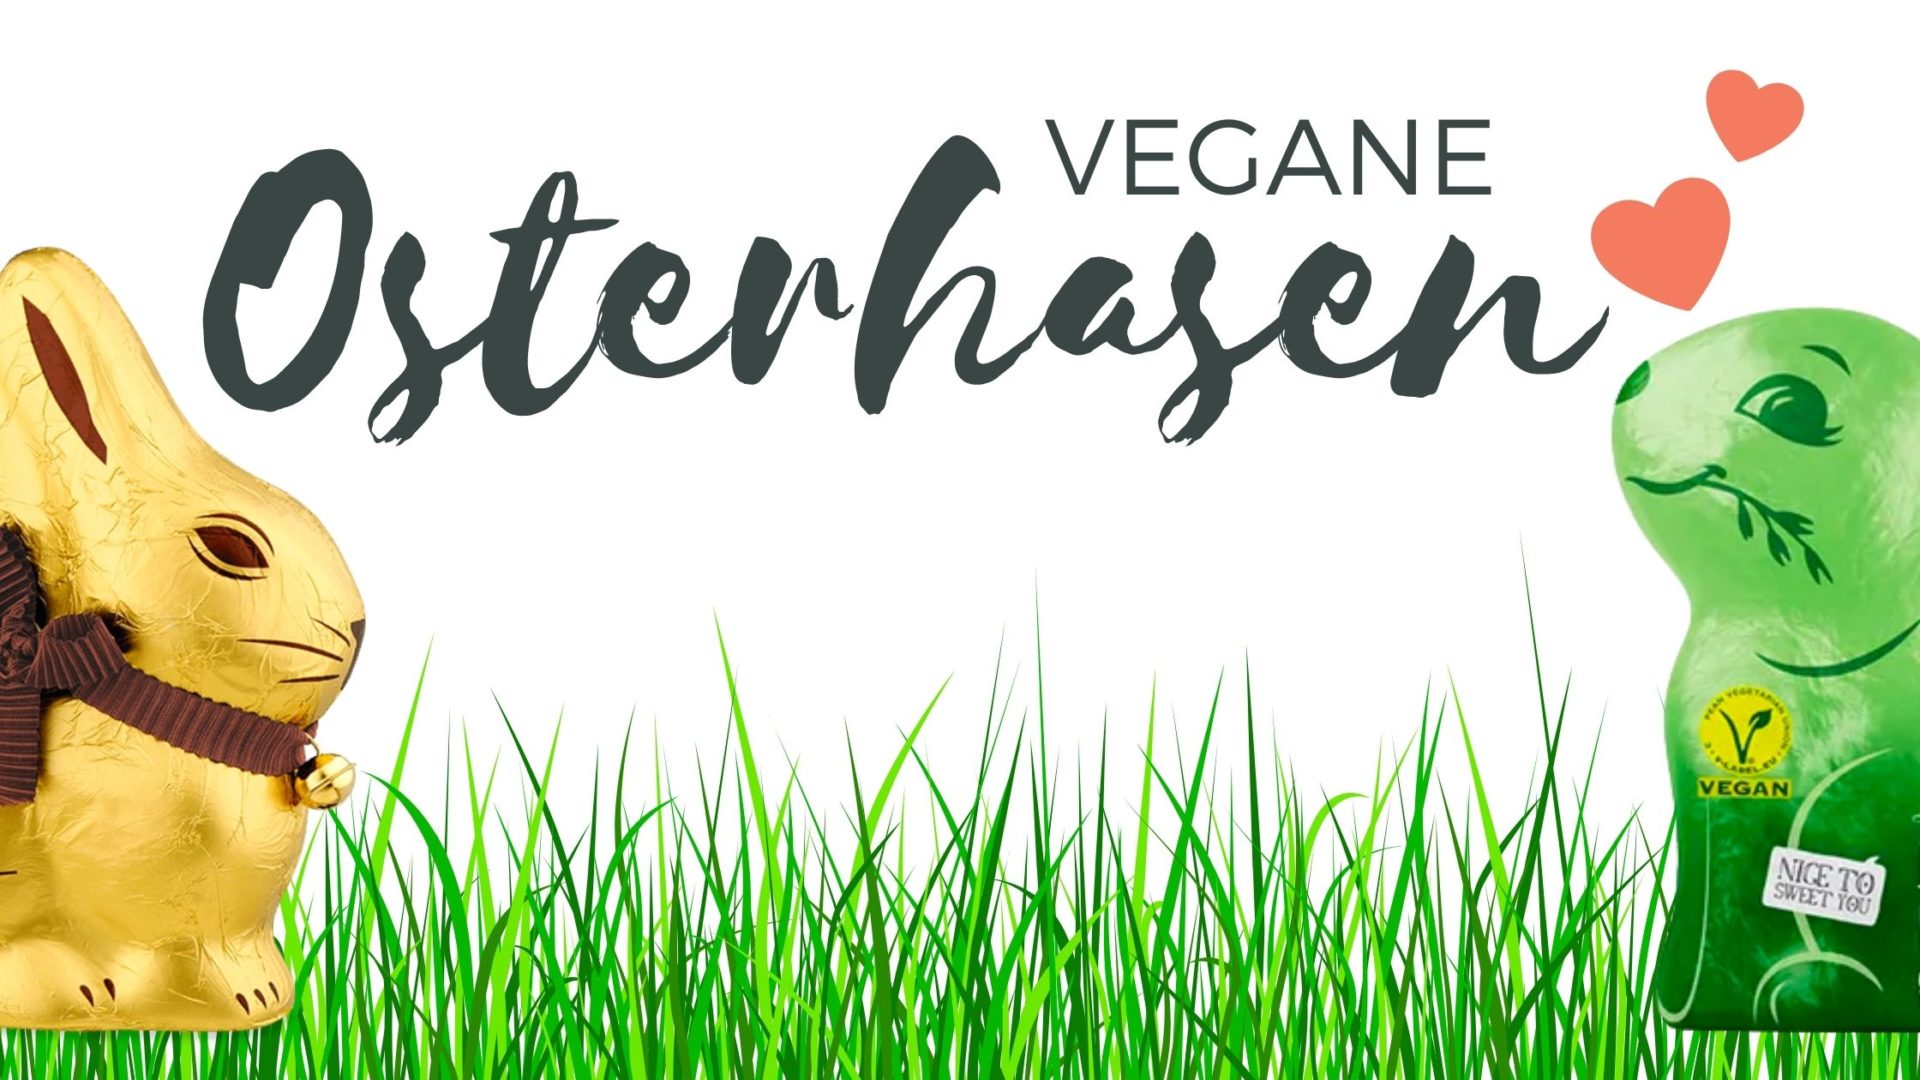 Vegane Osterhasen - die besten